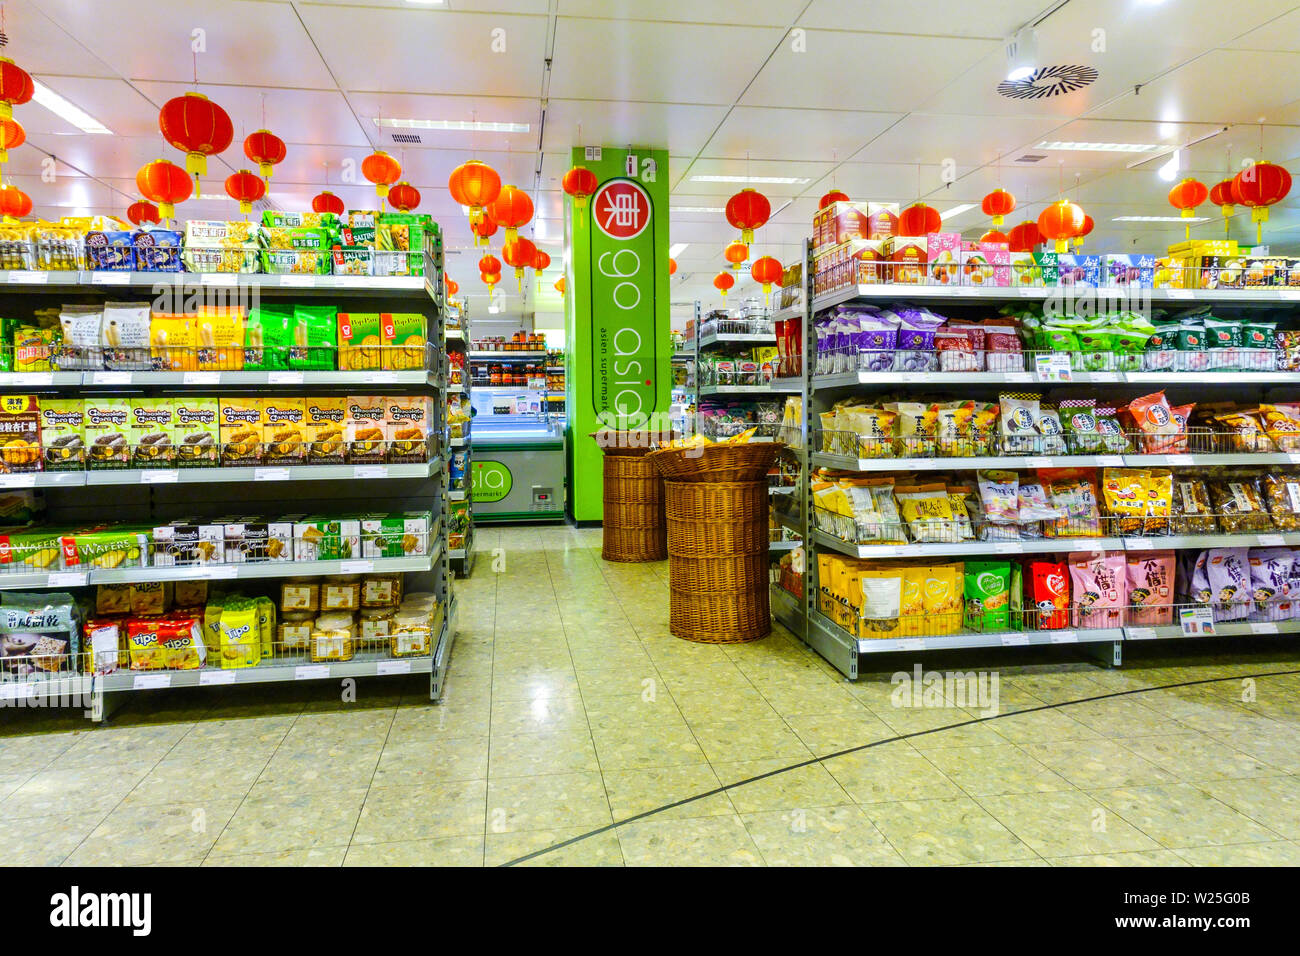 Asian supermercato 'Go Asia' specializzato nella vendita di prodotti solo da Asia, Dresda, Germania Decorazione di lanterne cinesi Foto Stock